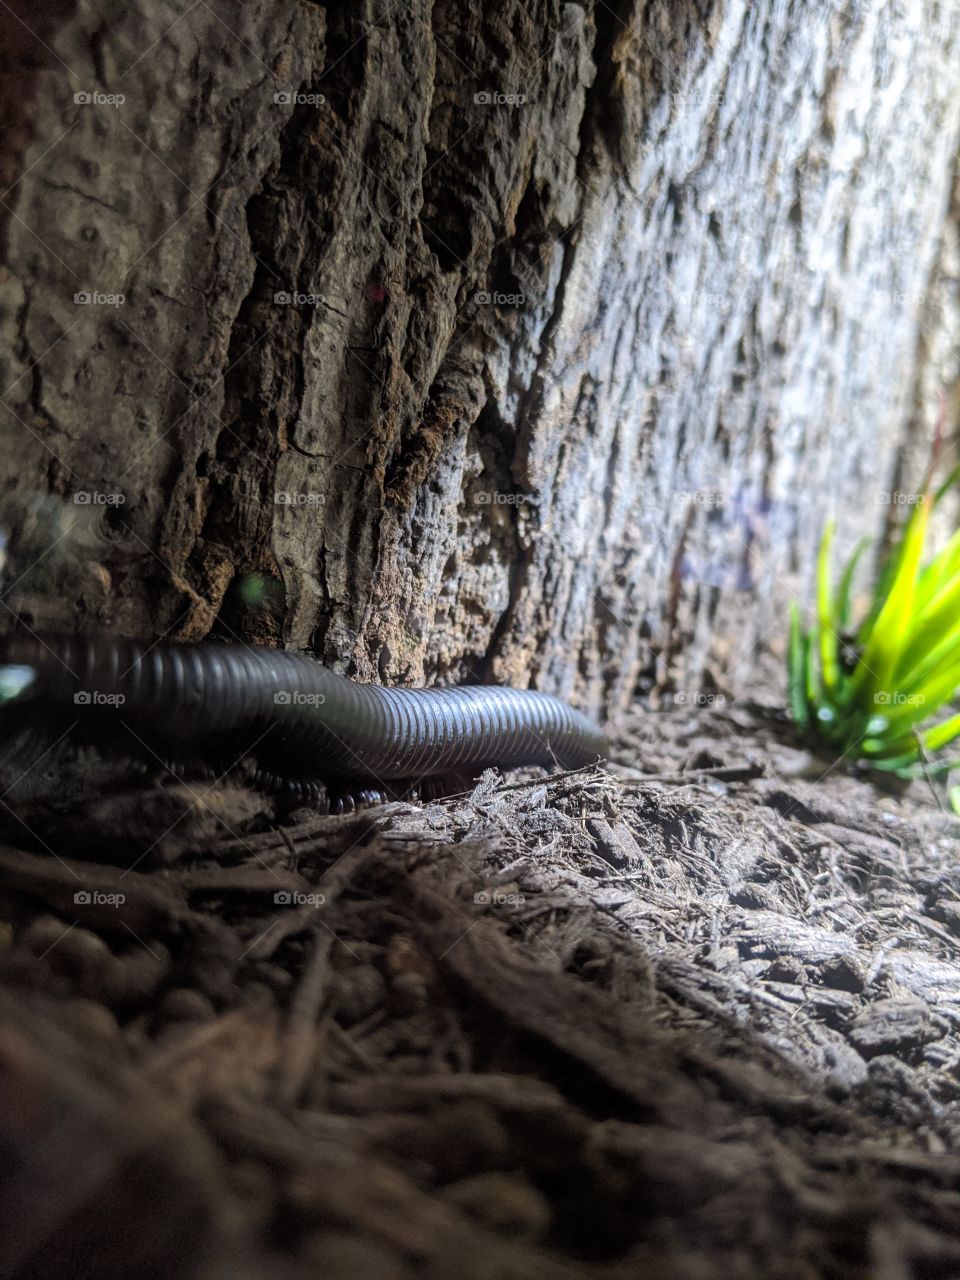 A millipede in a habitat 💜